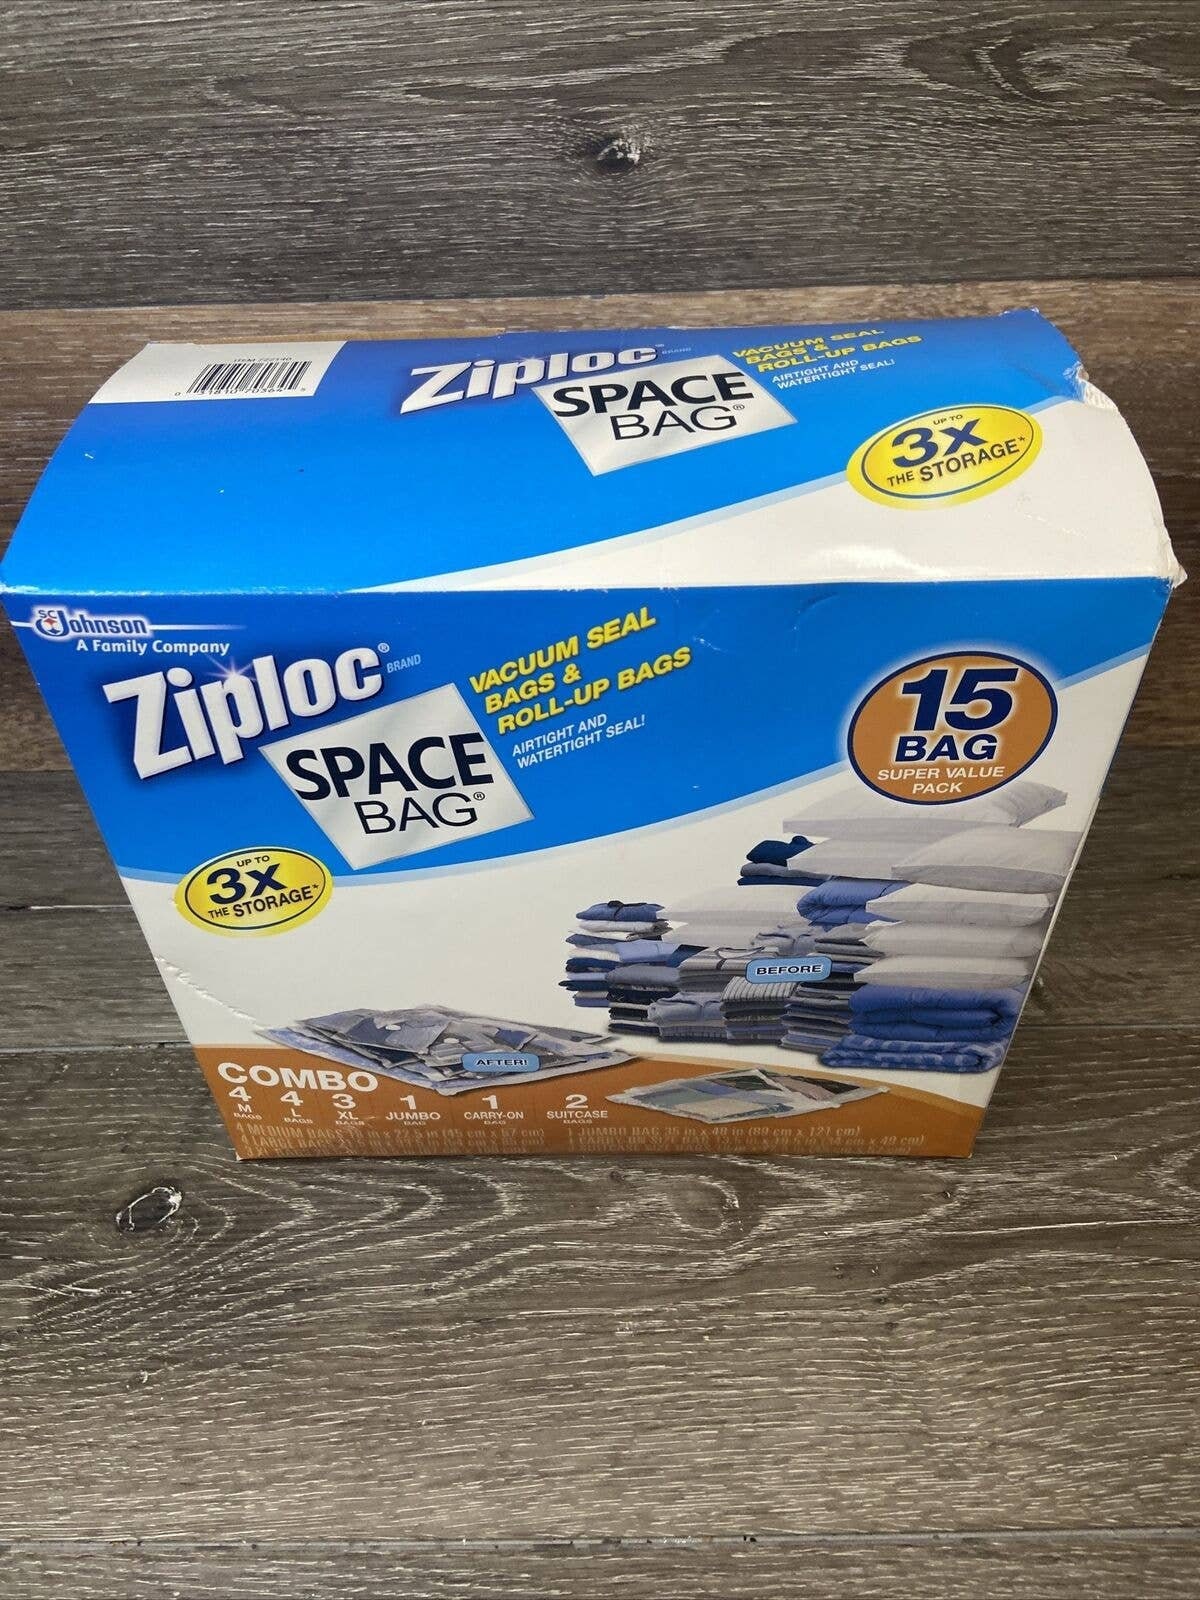 Ziploc Space Bag Super Value Pack 15 Bag Combo Pack Vacuum Seal